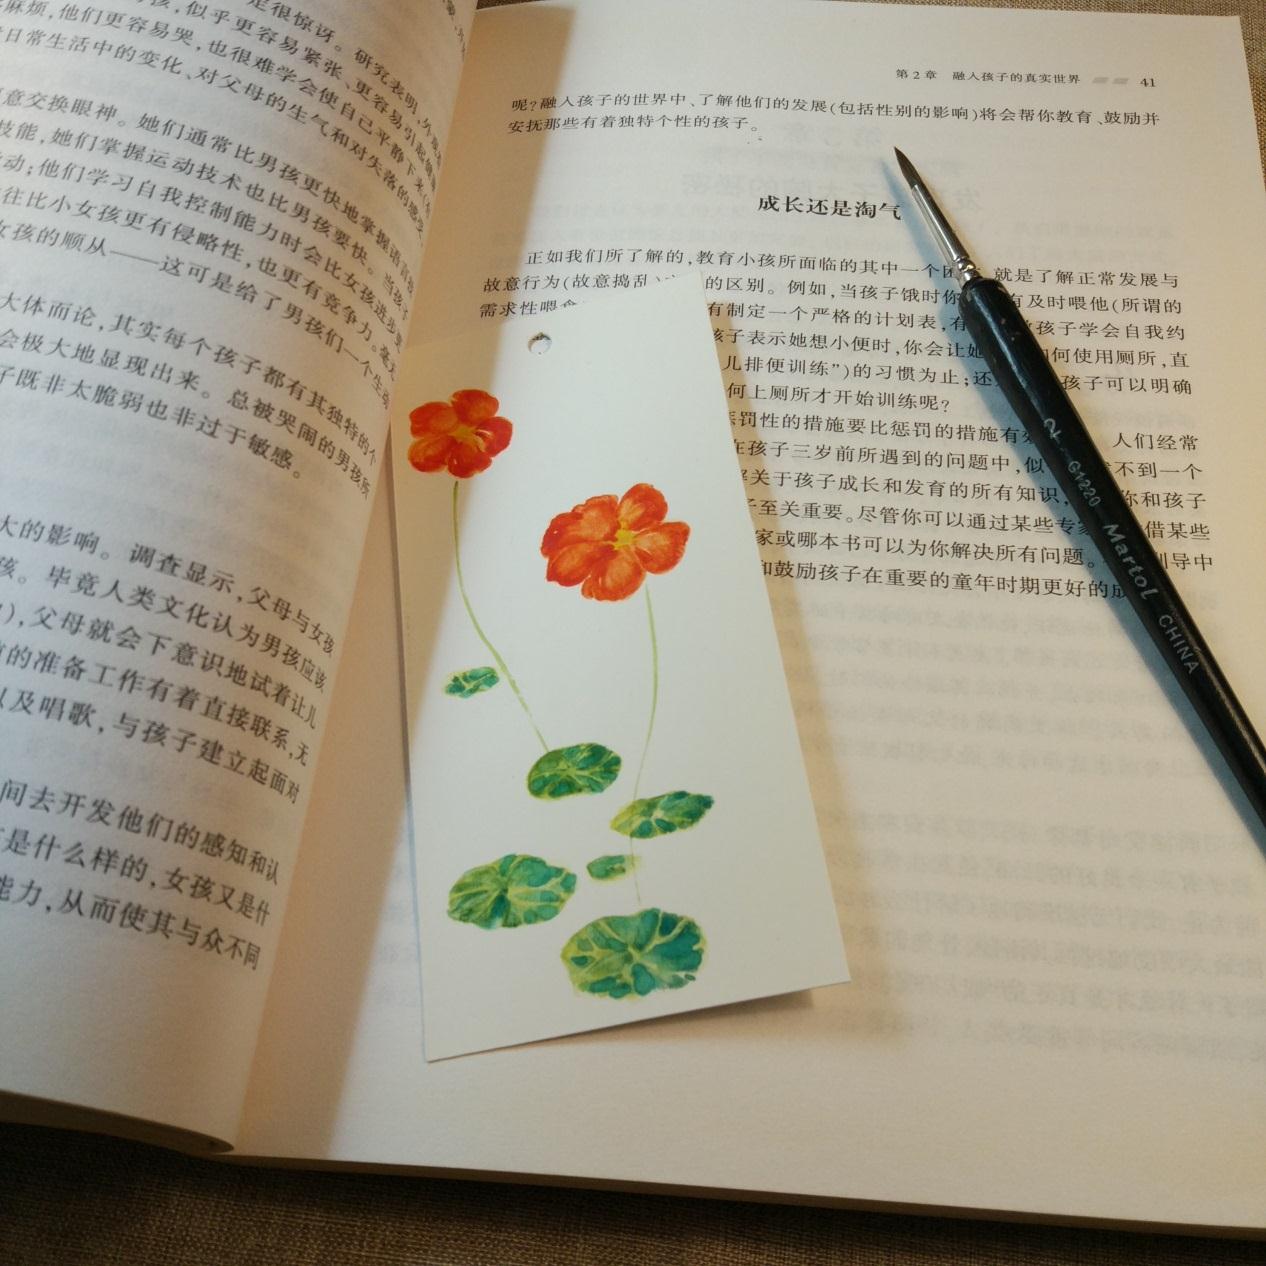 漂亮的花卉图案的手绘书签的详细制作教程